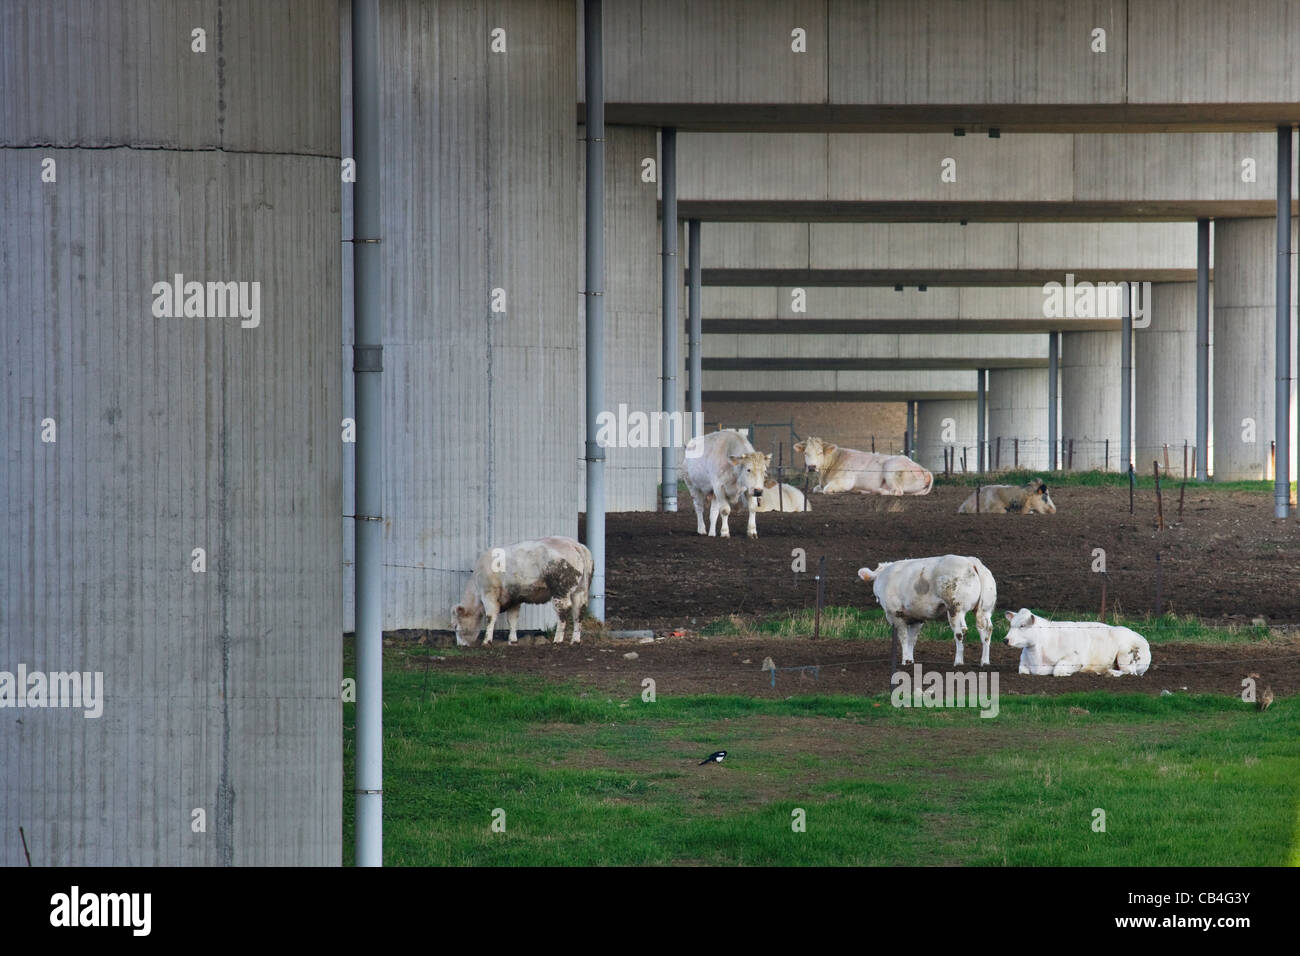 El rebaño de vacas que pastan bajo el puente carretero, Bélgica Foto de stock